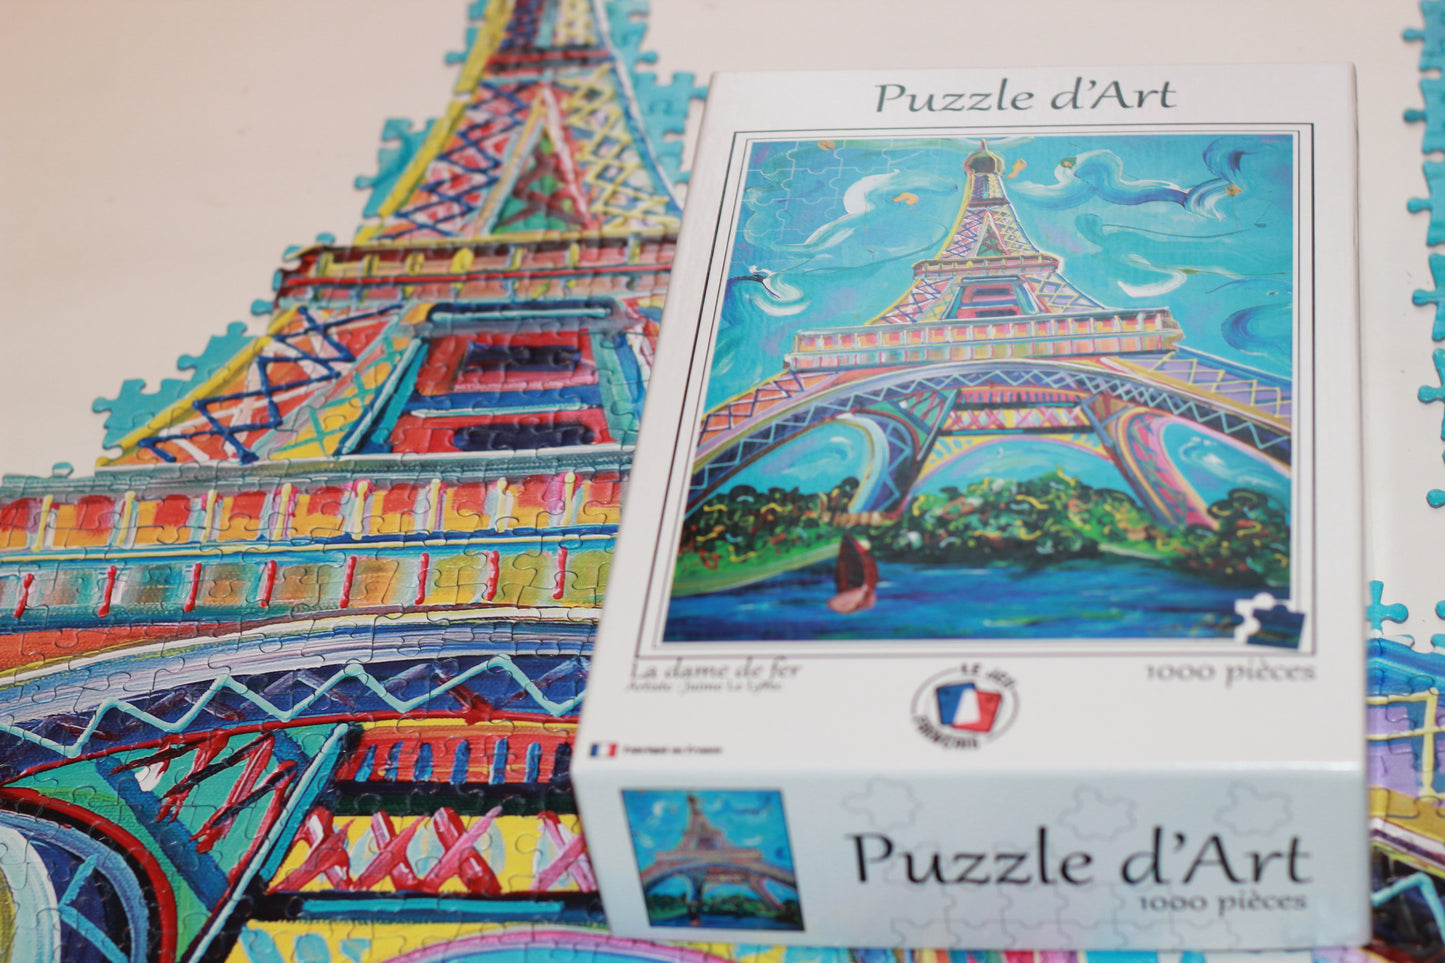 Puzzle d'Art Collector - 1000 pièces - La Dame de Fer